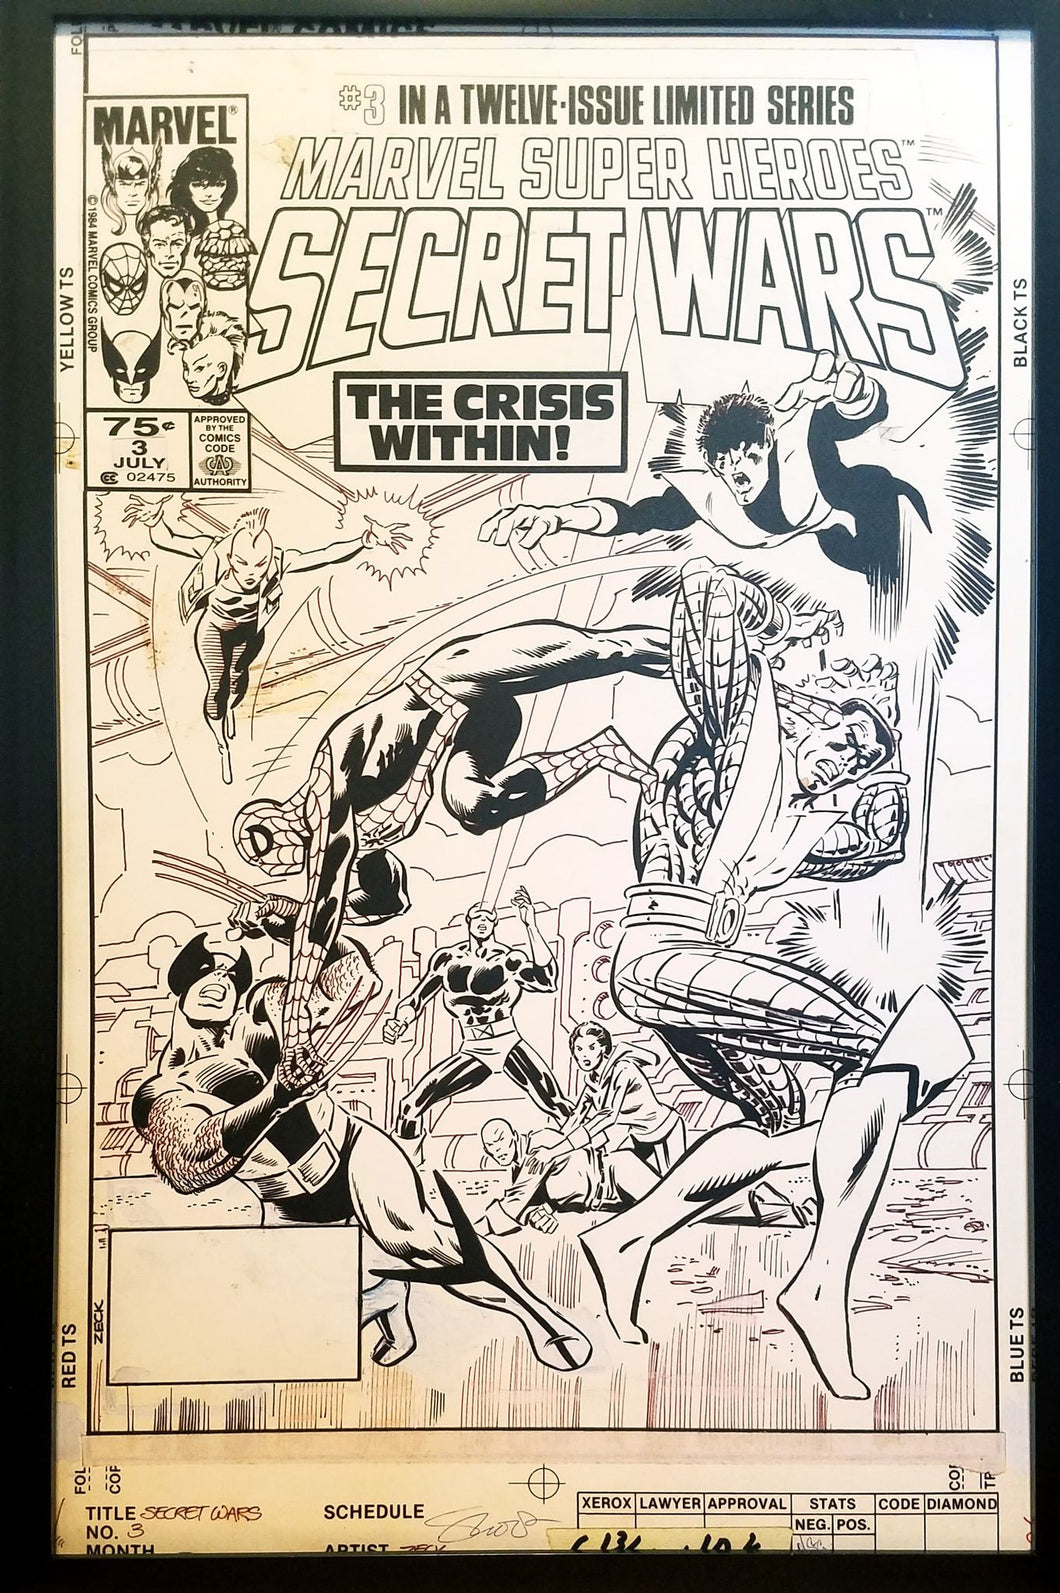 Secret Wars #3 X-Men Spider-Man Mike Zeck 11x17 FRAMED Original Art Poster Marvel Comics